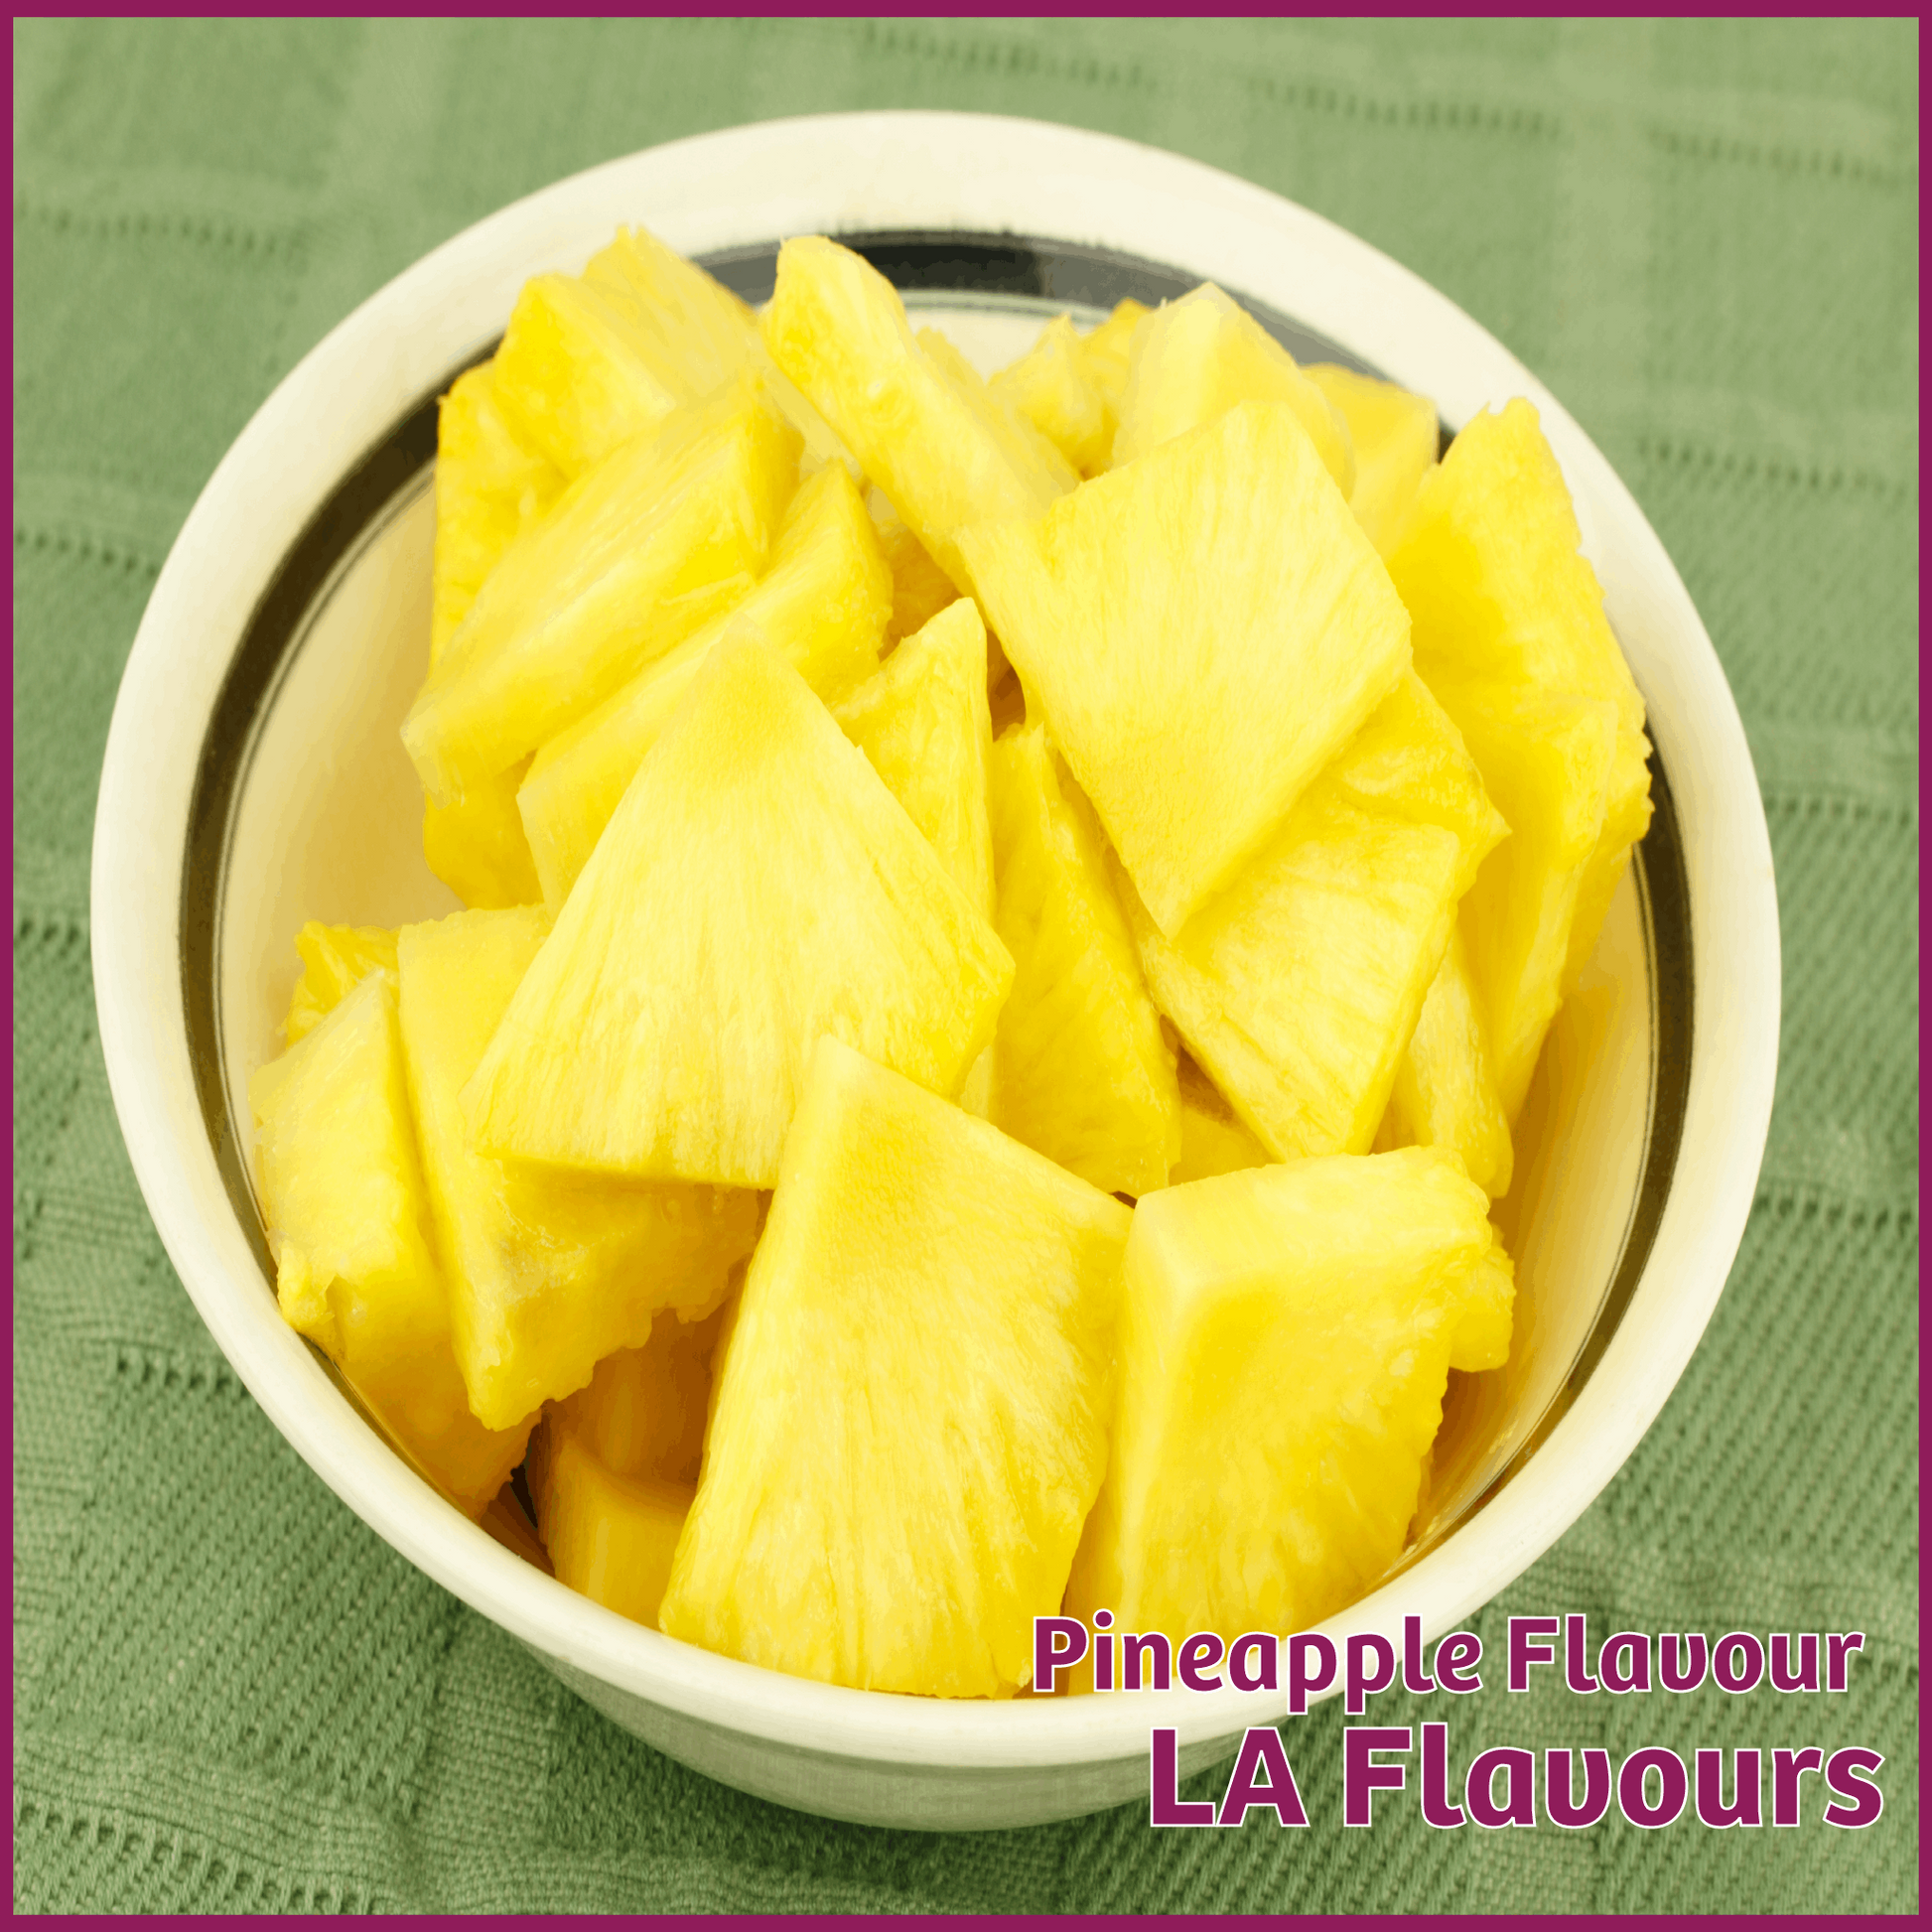 Pineapple Flavour - LA Flavours - Flavour Fog - Canada's flavour depot.